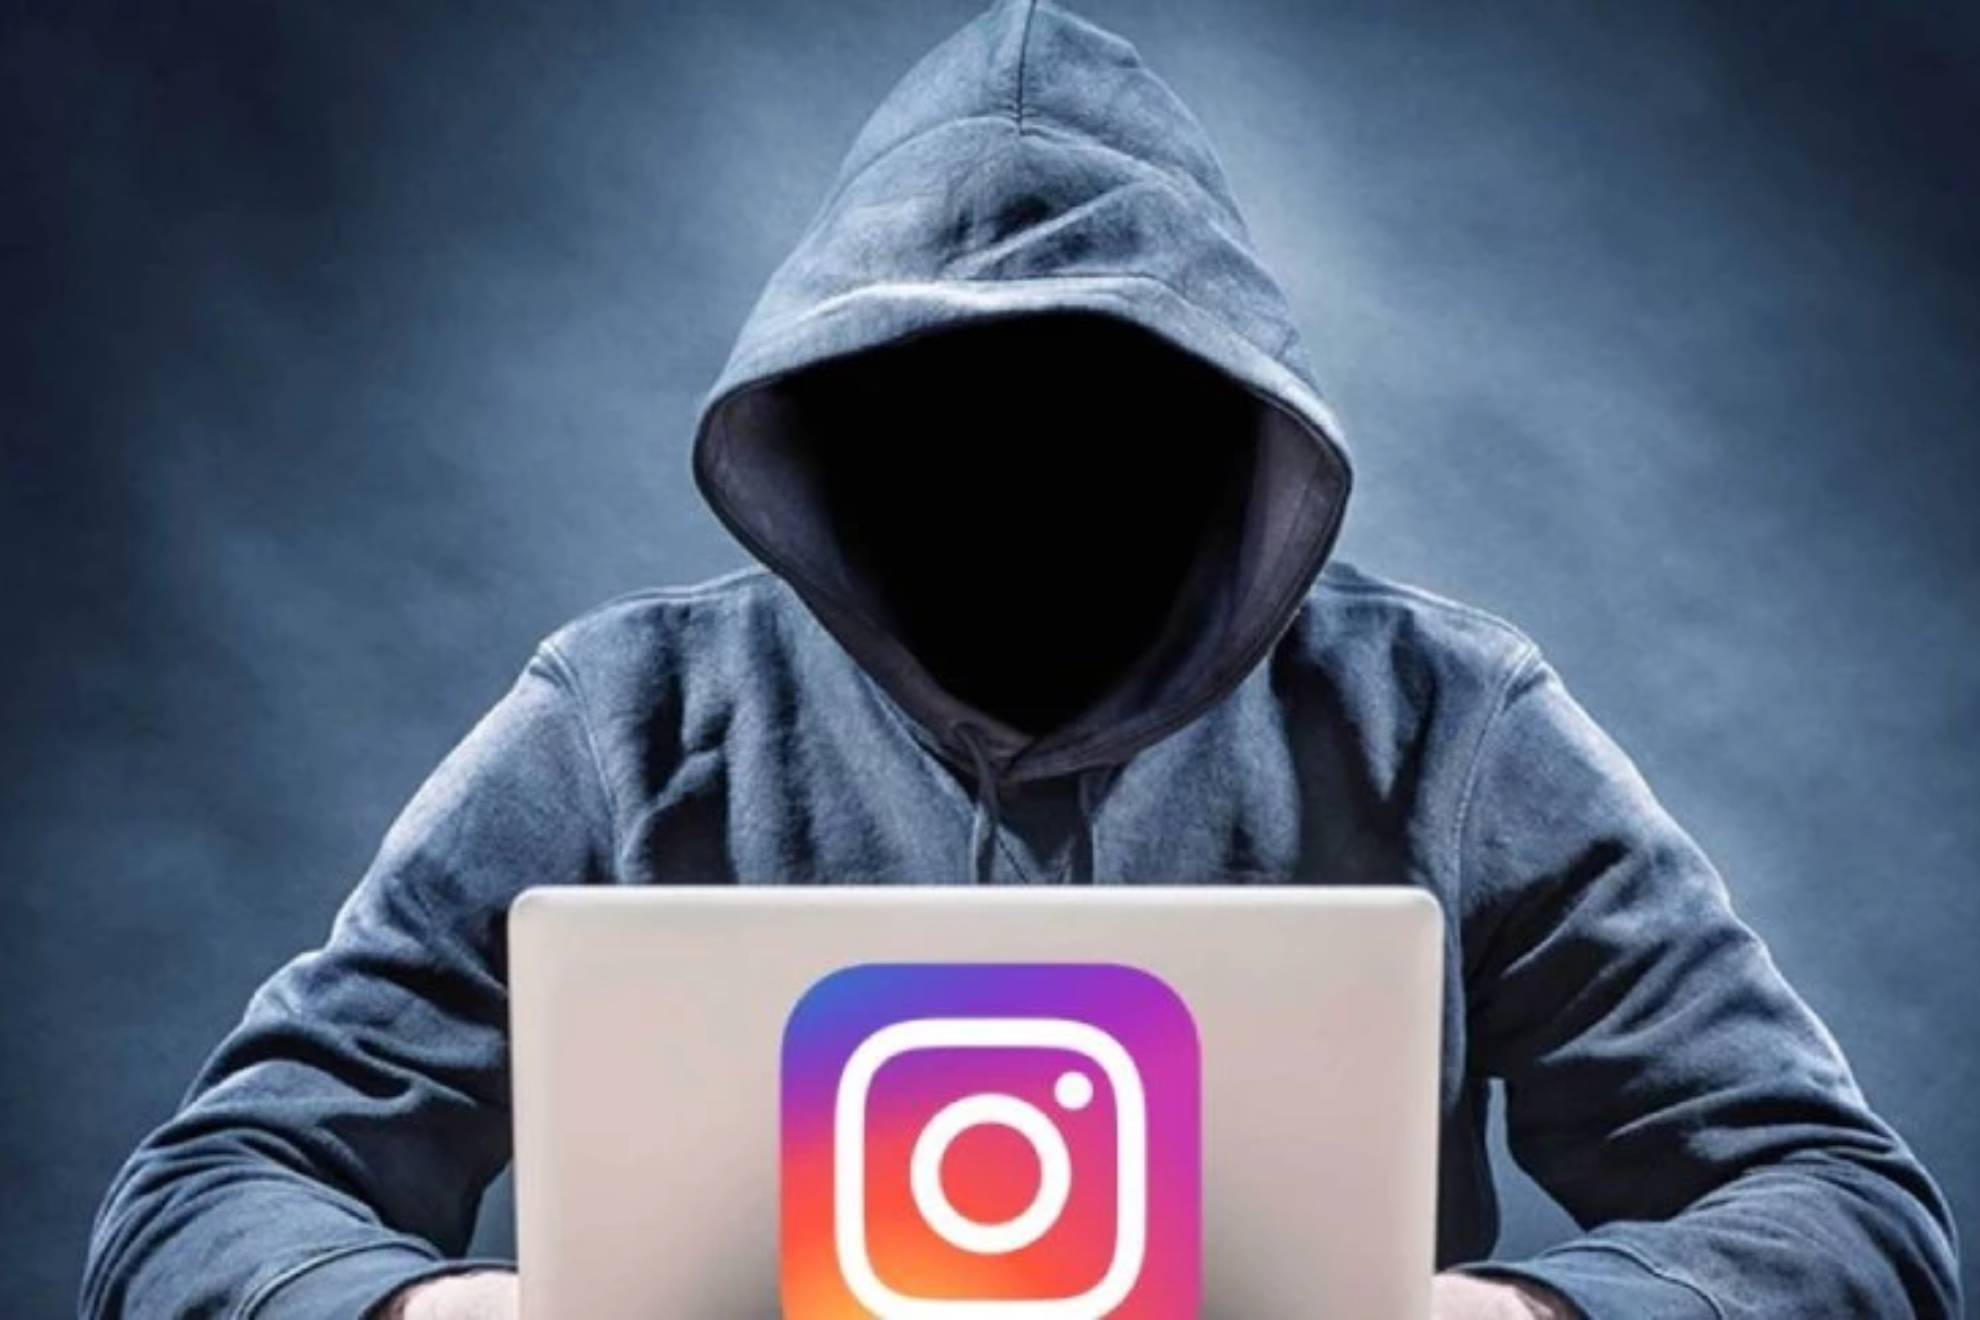 El hackeo de cuentas de Instagram, toda una pandemia digital